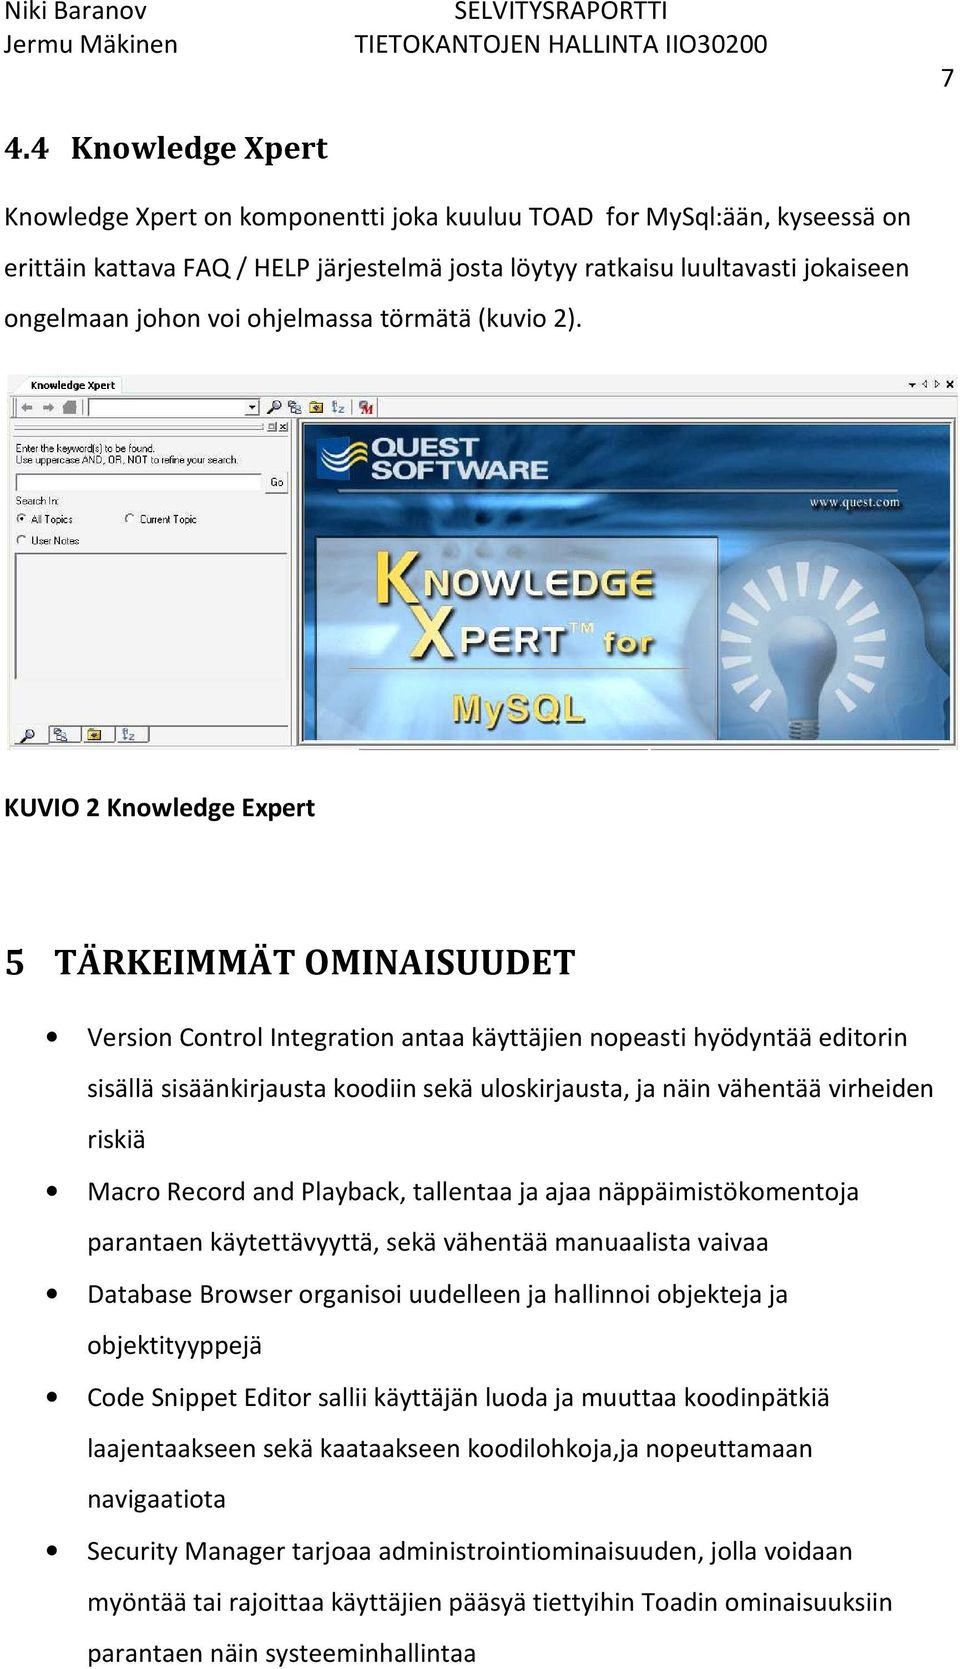 KUVIO 2 Knowledge Expert 5 TÄRKEIMMÄT OMINAISUUDET Version Control Integration antaa käyttäjien nopeasti hyödyntää editorin sisällä sisäänkirjausta koodiin sekä uloskirjausta, ja näin vähentää